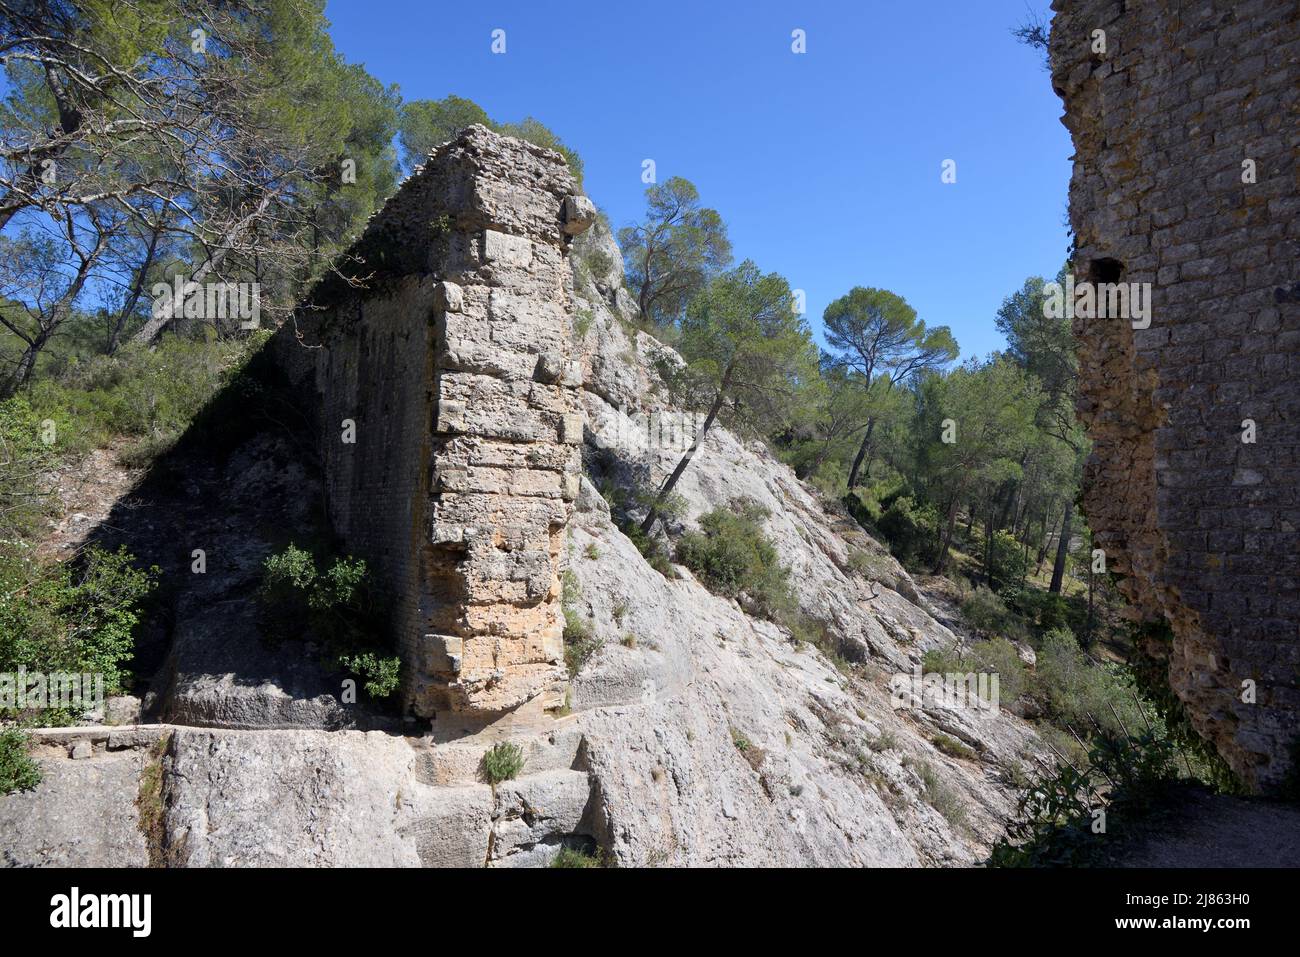 Vestiges de l'aqueduc romain en ruines, barrage ou barrage, qui a apporté de l'eau à Aquae Sextius à l'époque romaine, au Tholonet Aix-en-Provence Provence Banque D'Images